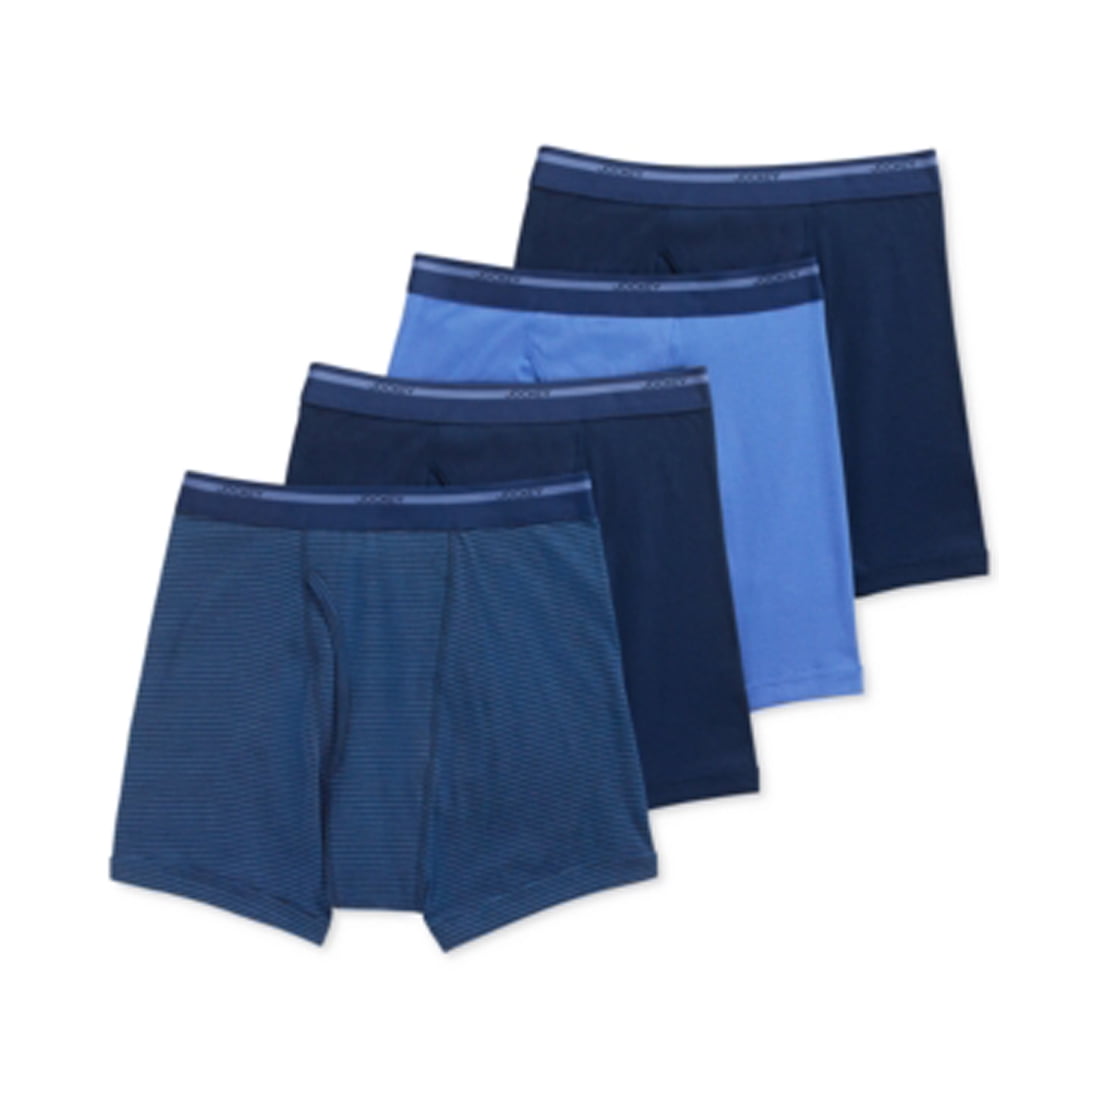 Jockey Men's Underwear , Blue, Medium - Walmart.com